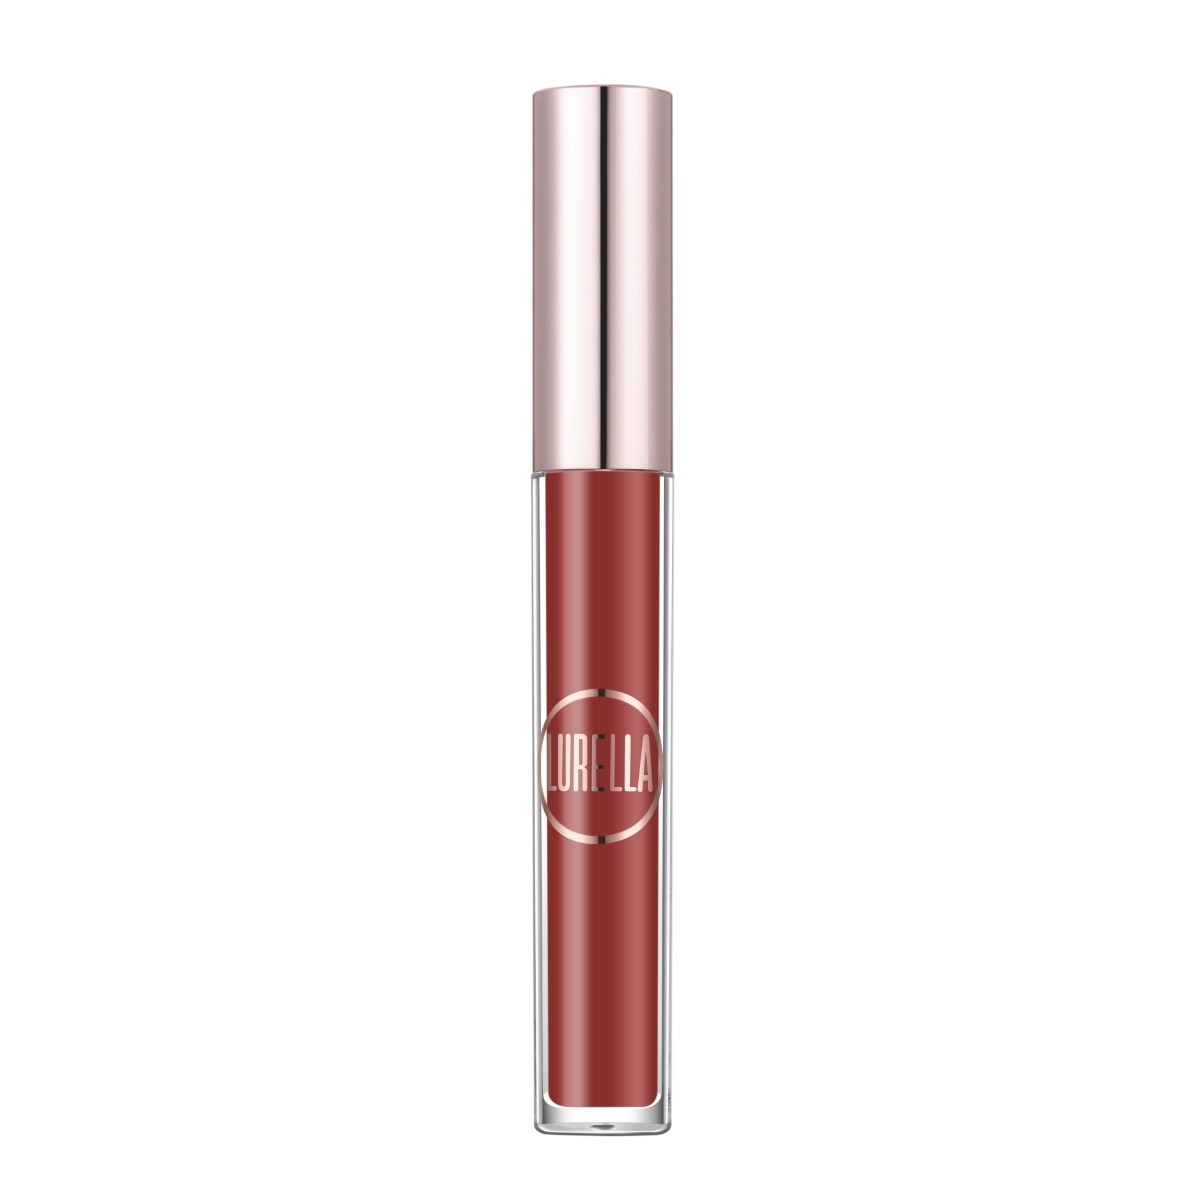 Lurella Liquid Lipstick (Velvet)